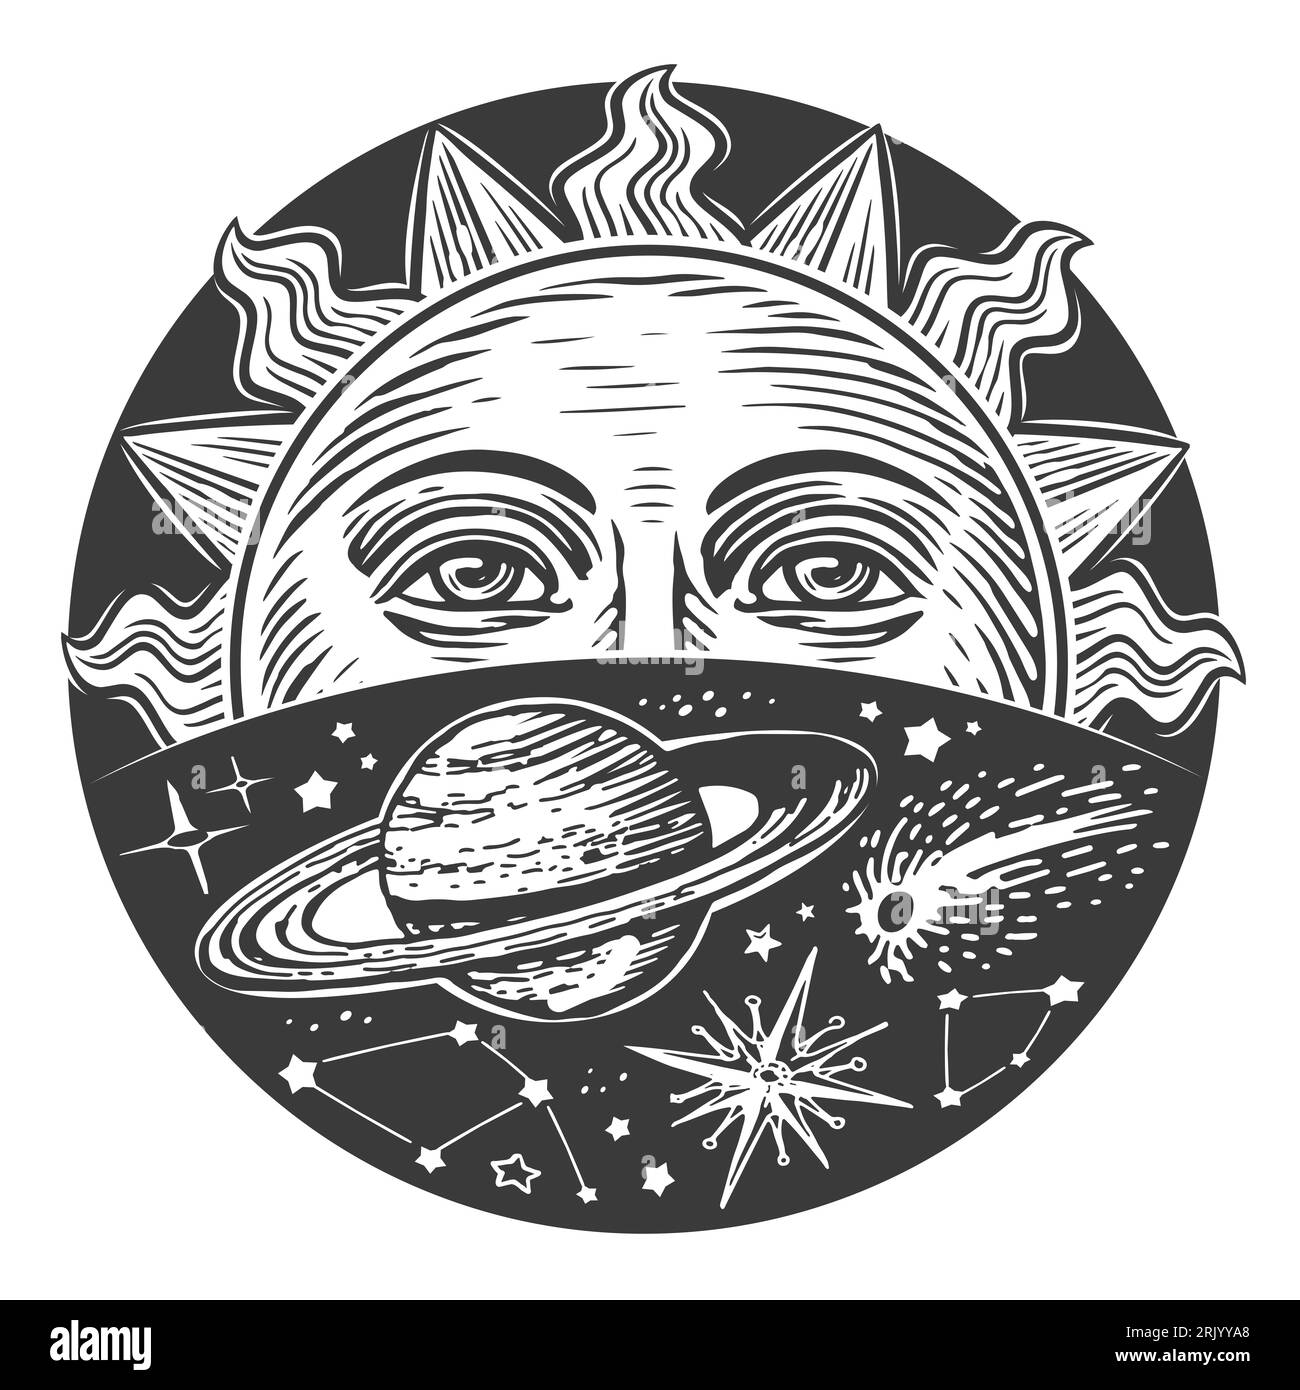 Soleil avec visage et étoiles dans l'espace. Imprimé céleste monochrome. Design de style Boho gravure illustration vintage Banque D'Images